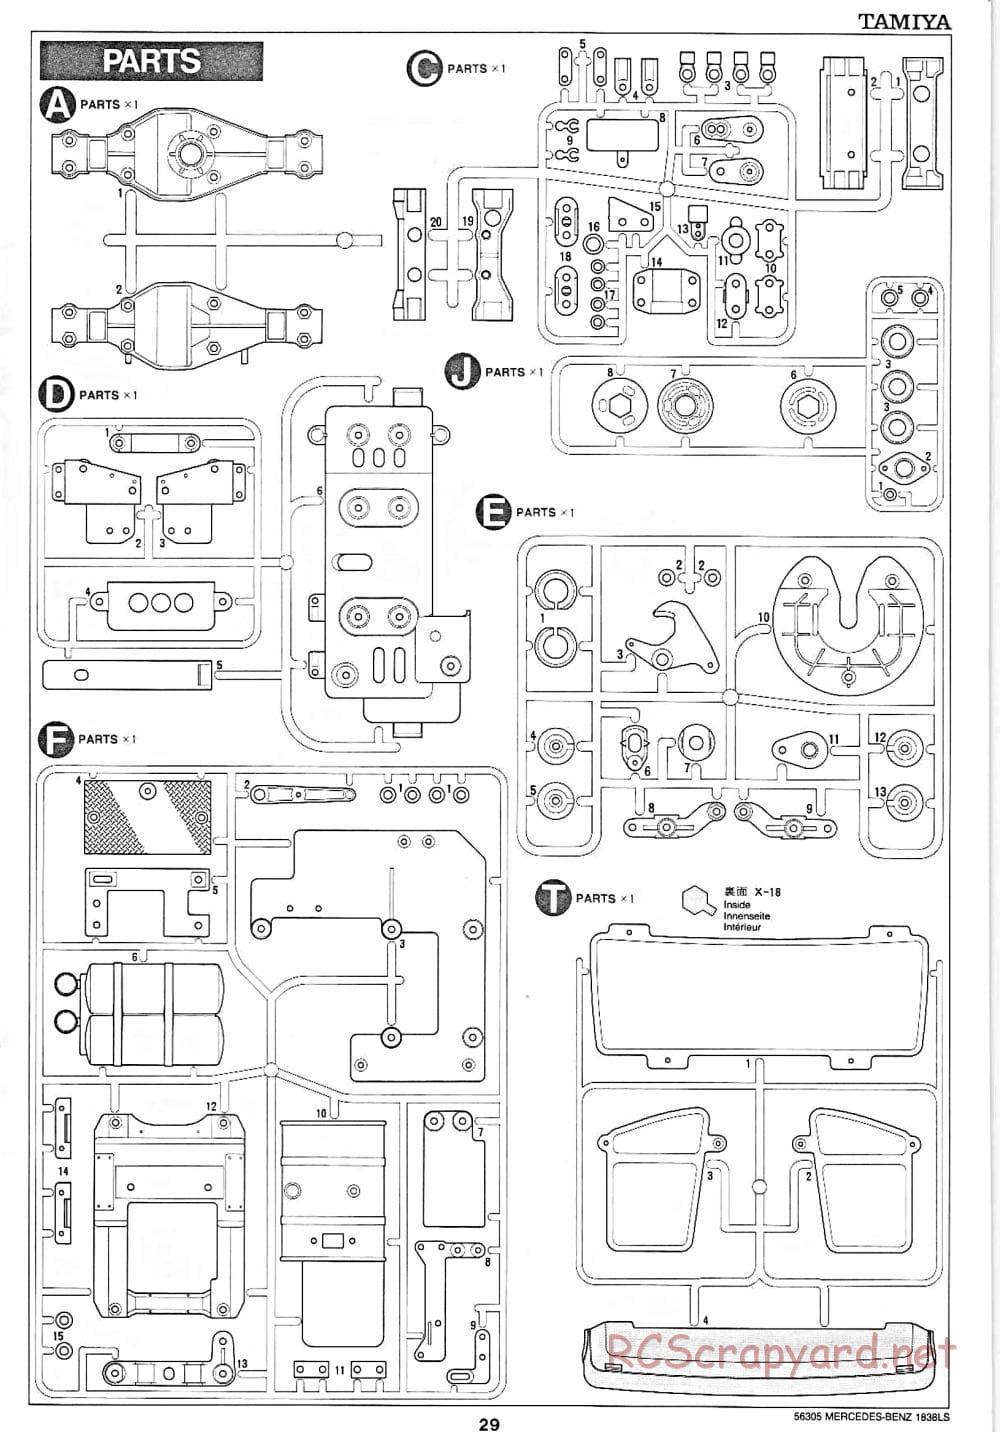 Tamiya - Mercedes-Benz 1838LS - Manual - Page 29